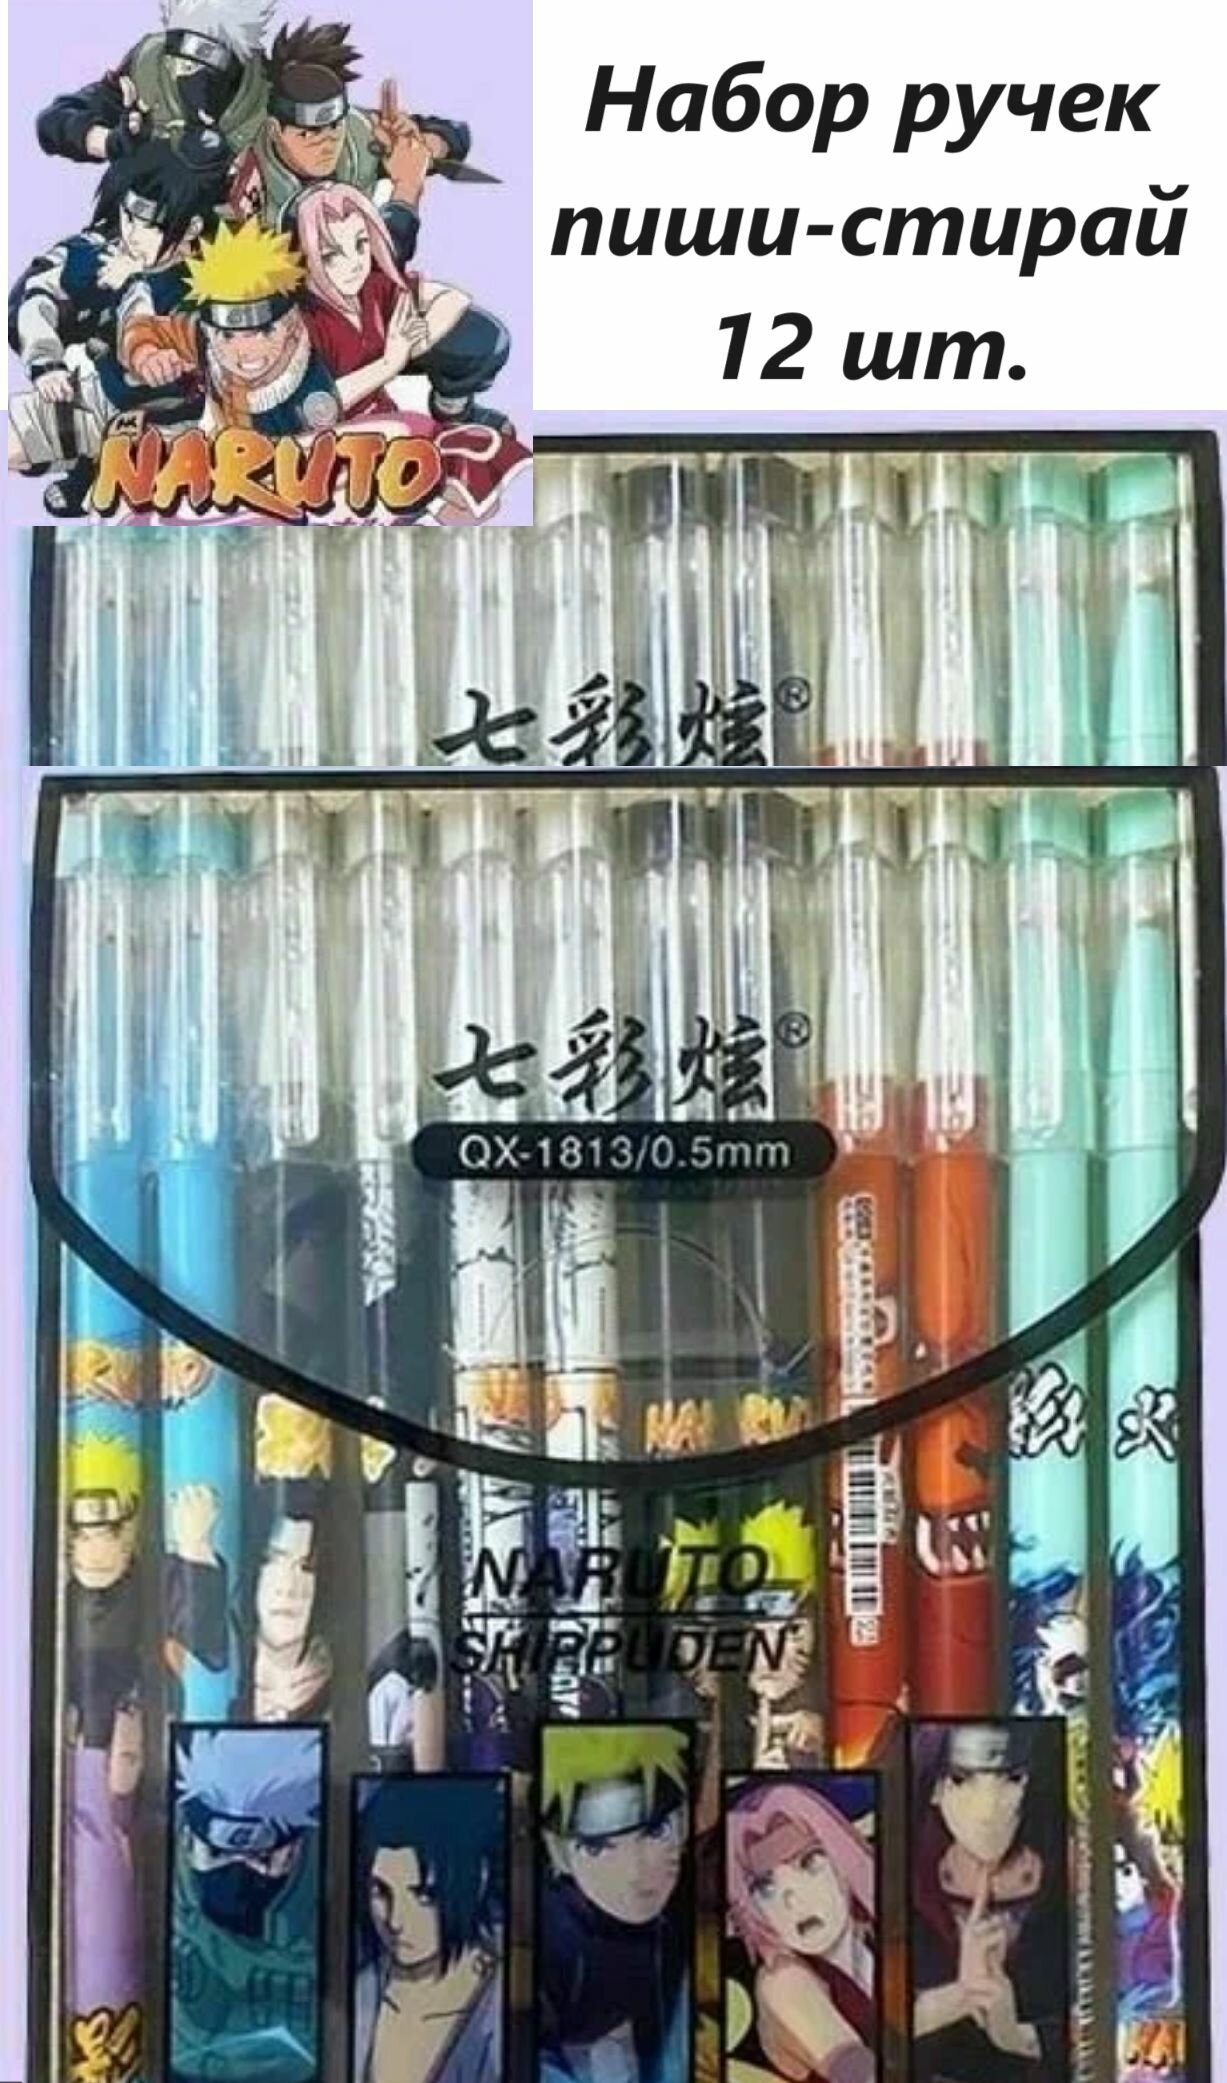 Набор ручек пиши-стирай Naruto, ручки гелиевые Наруто 12 шт. + подарок